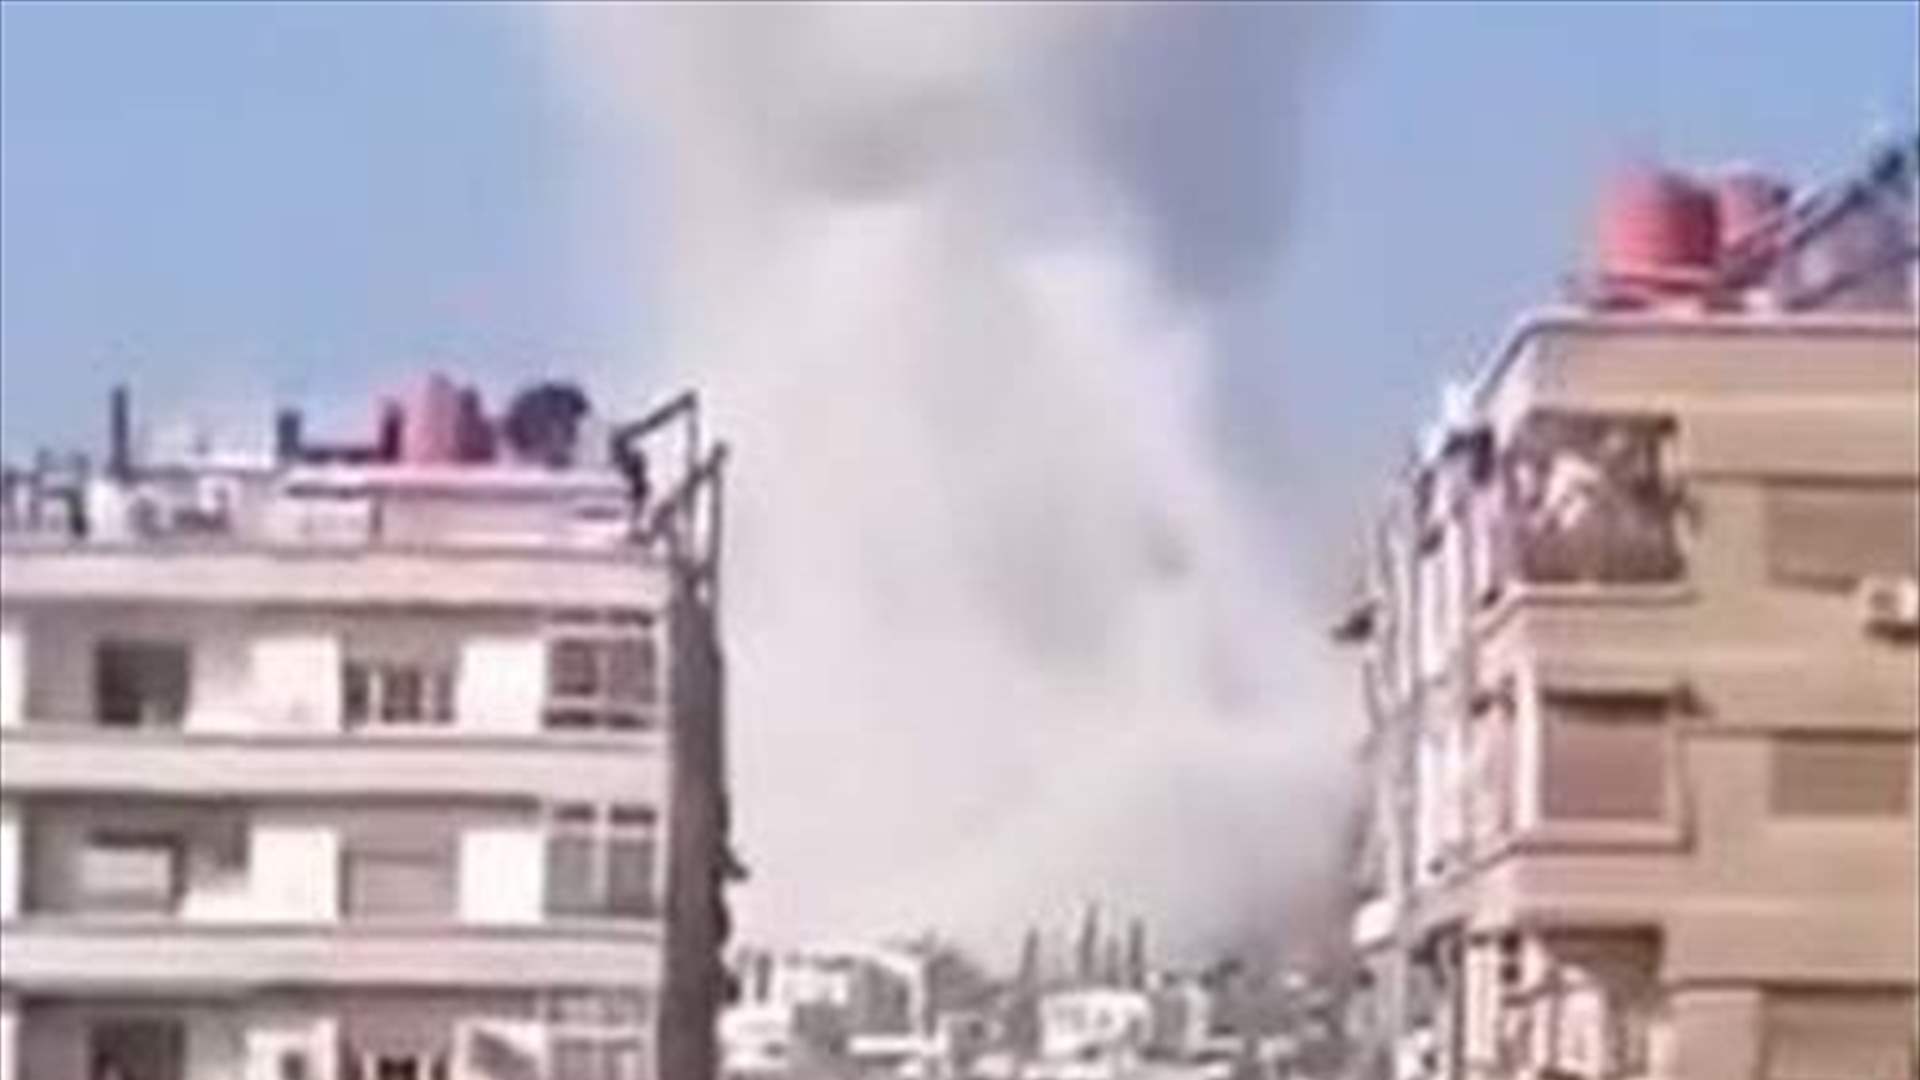 بالفيديو - مشاهد أولية للانفجار الذي وقع في دمشق